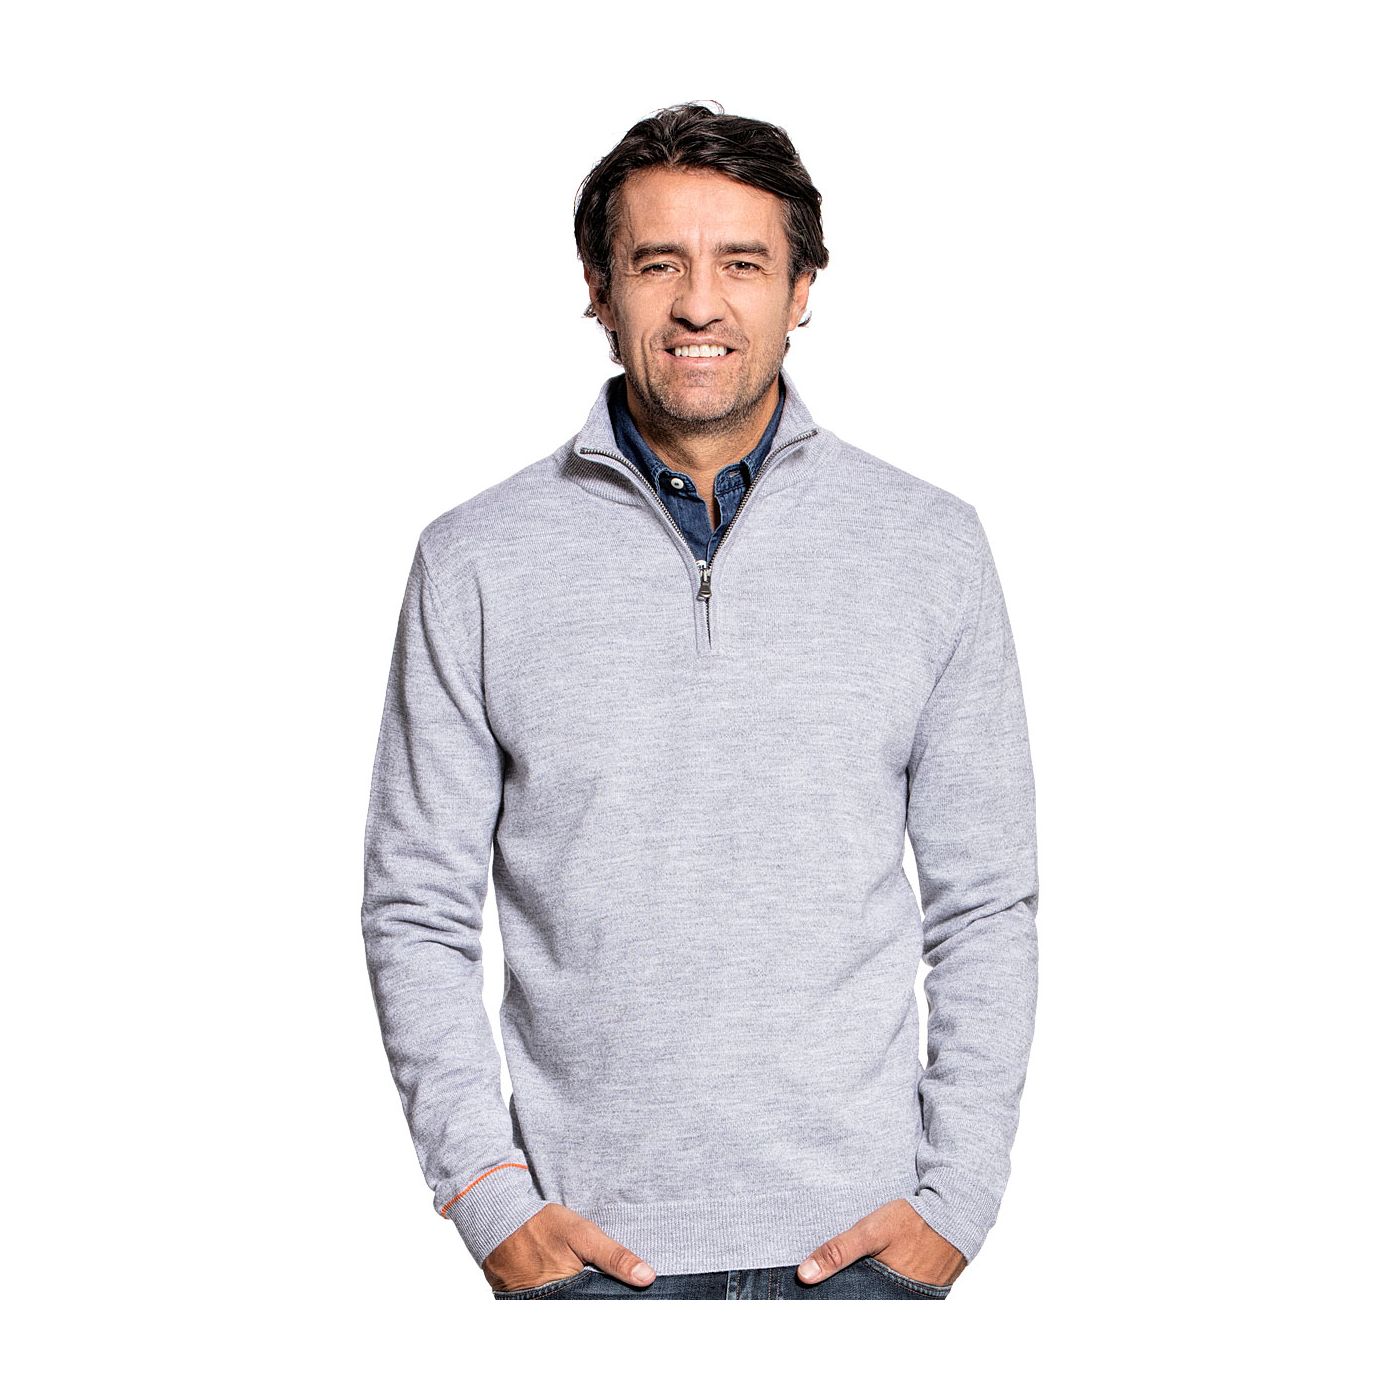 Half zip sweater for men made of Merino wool in Light grey